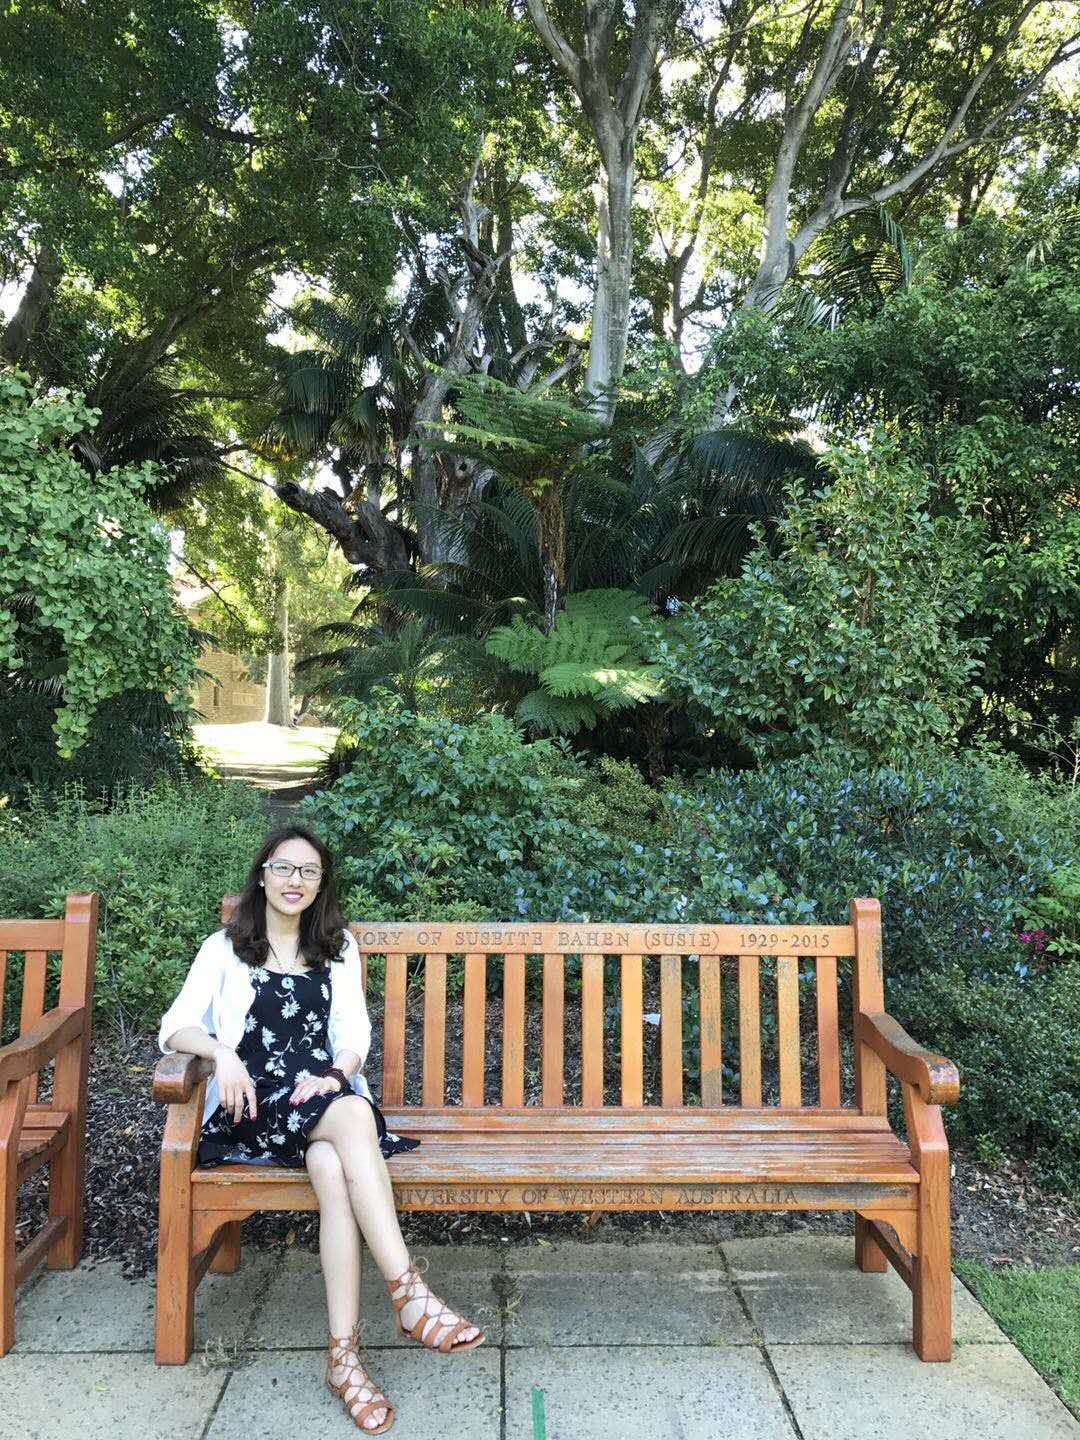 Tina on a bench at UWA